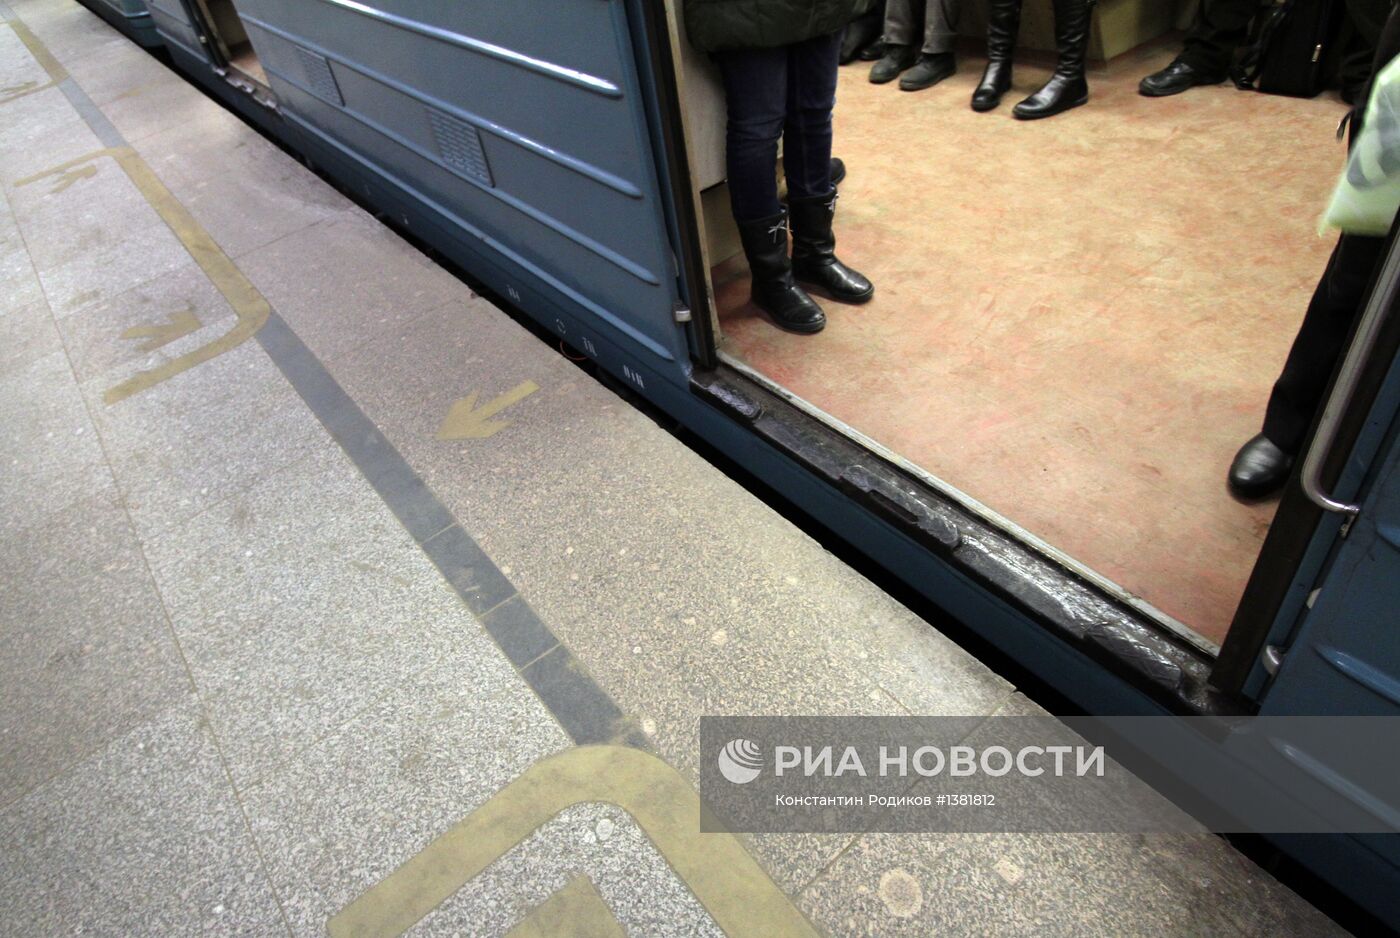 Новая разметка на платформах московского метрополитена